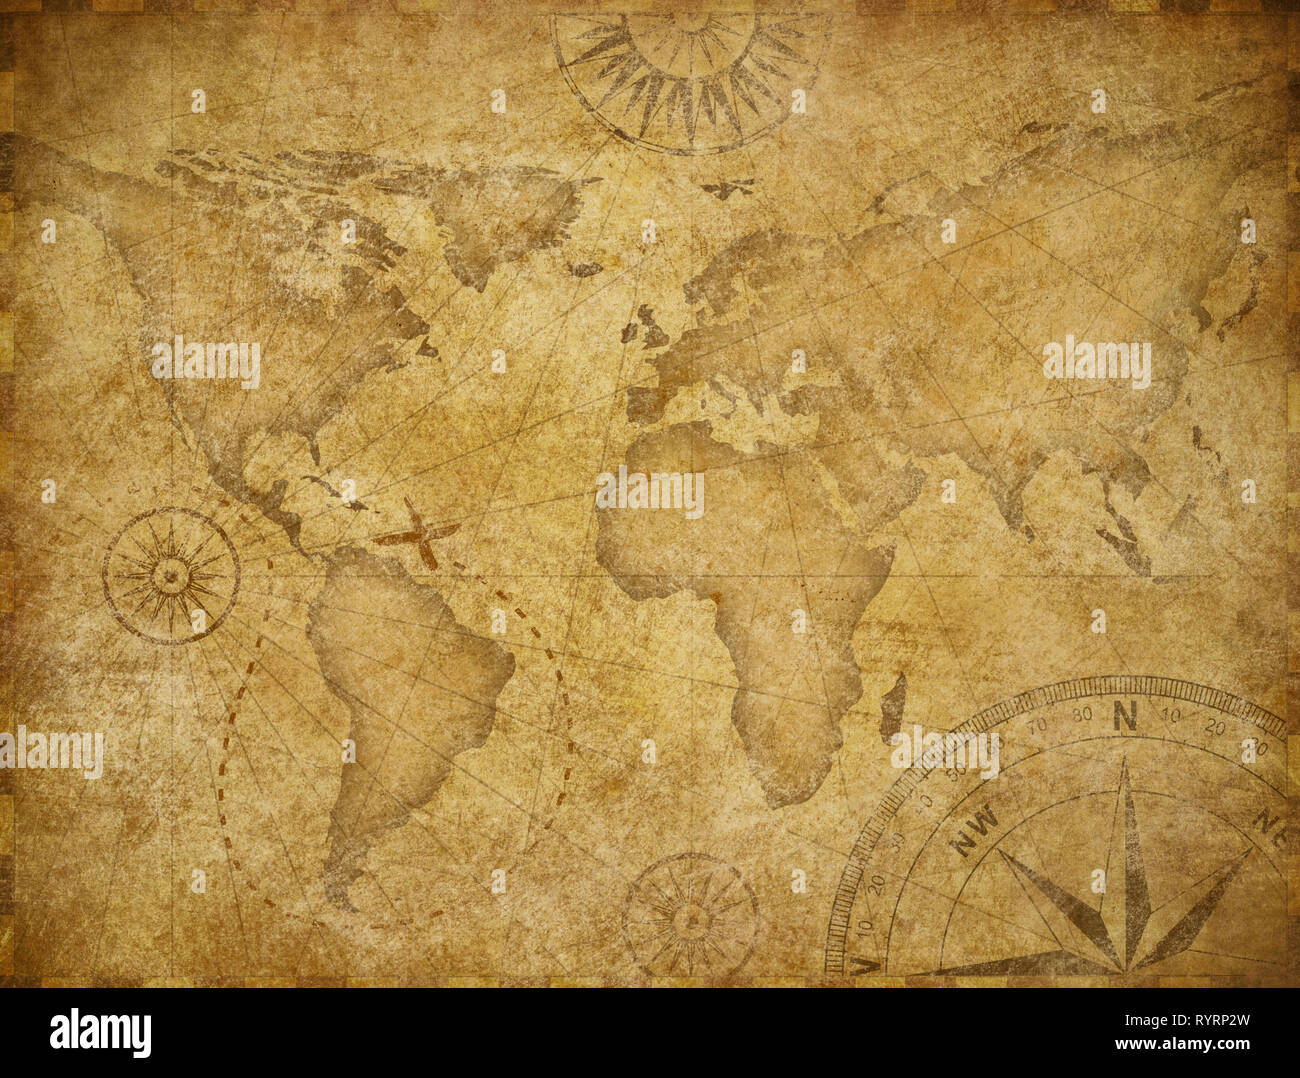 Il vecchio mondo esplorazione mappa basata sull'immagine fornita dalla NASA Foto Stock